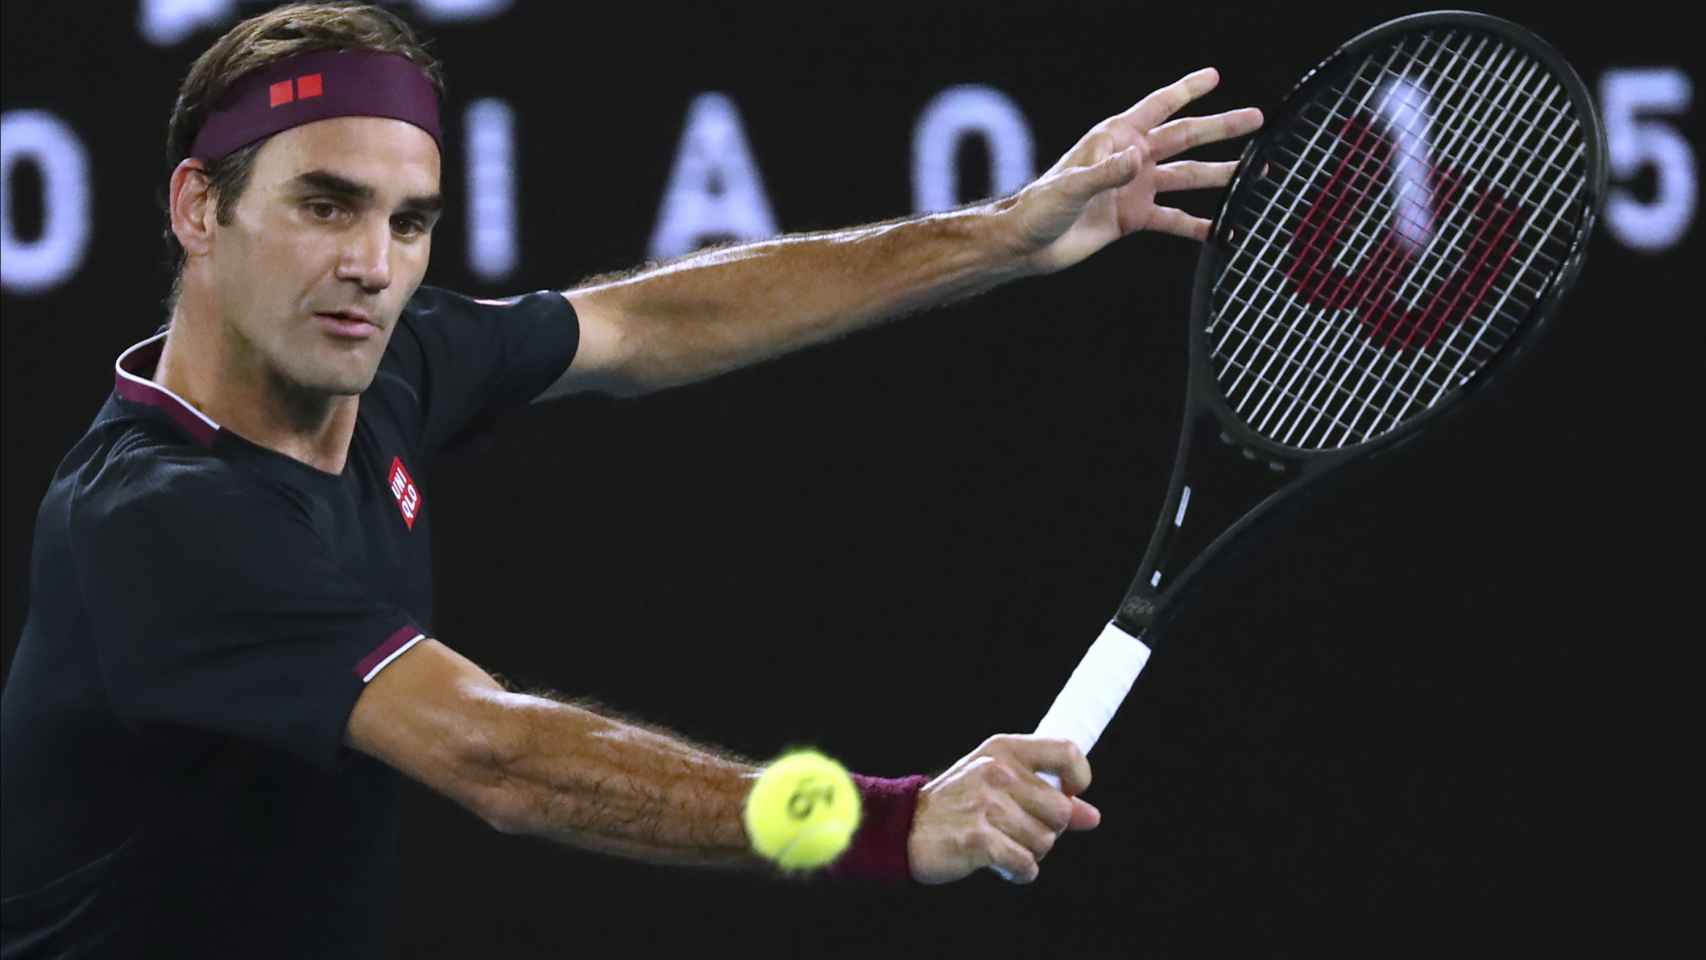 El tenista Roger Federer durante un partido de tenis en Nueva York, en septiembre de 2017.